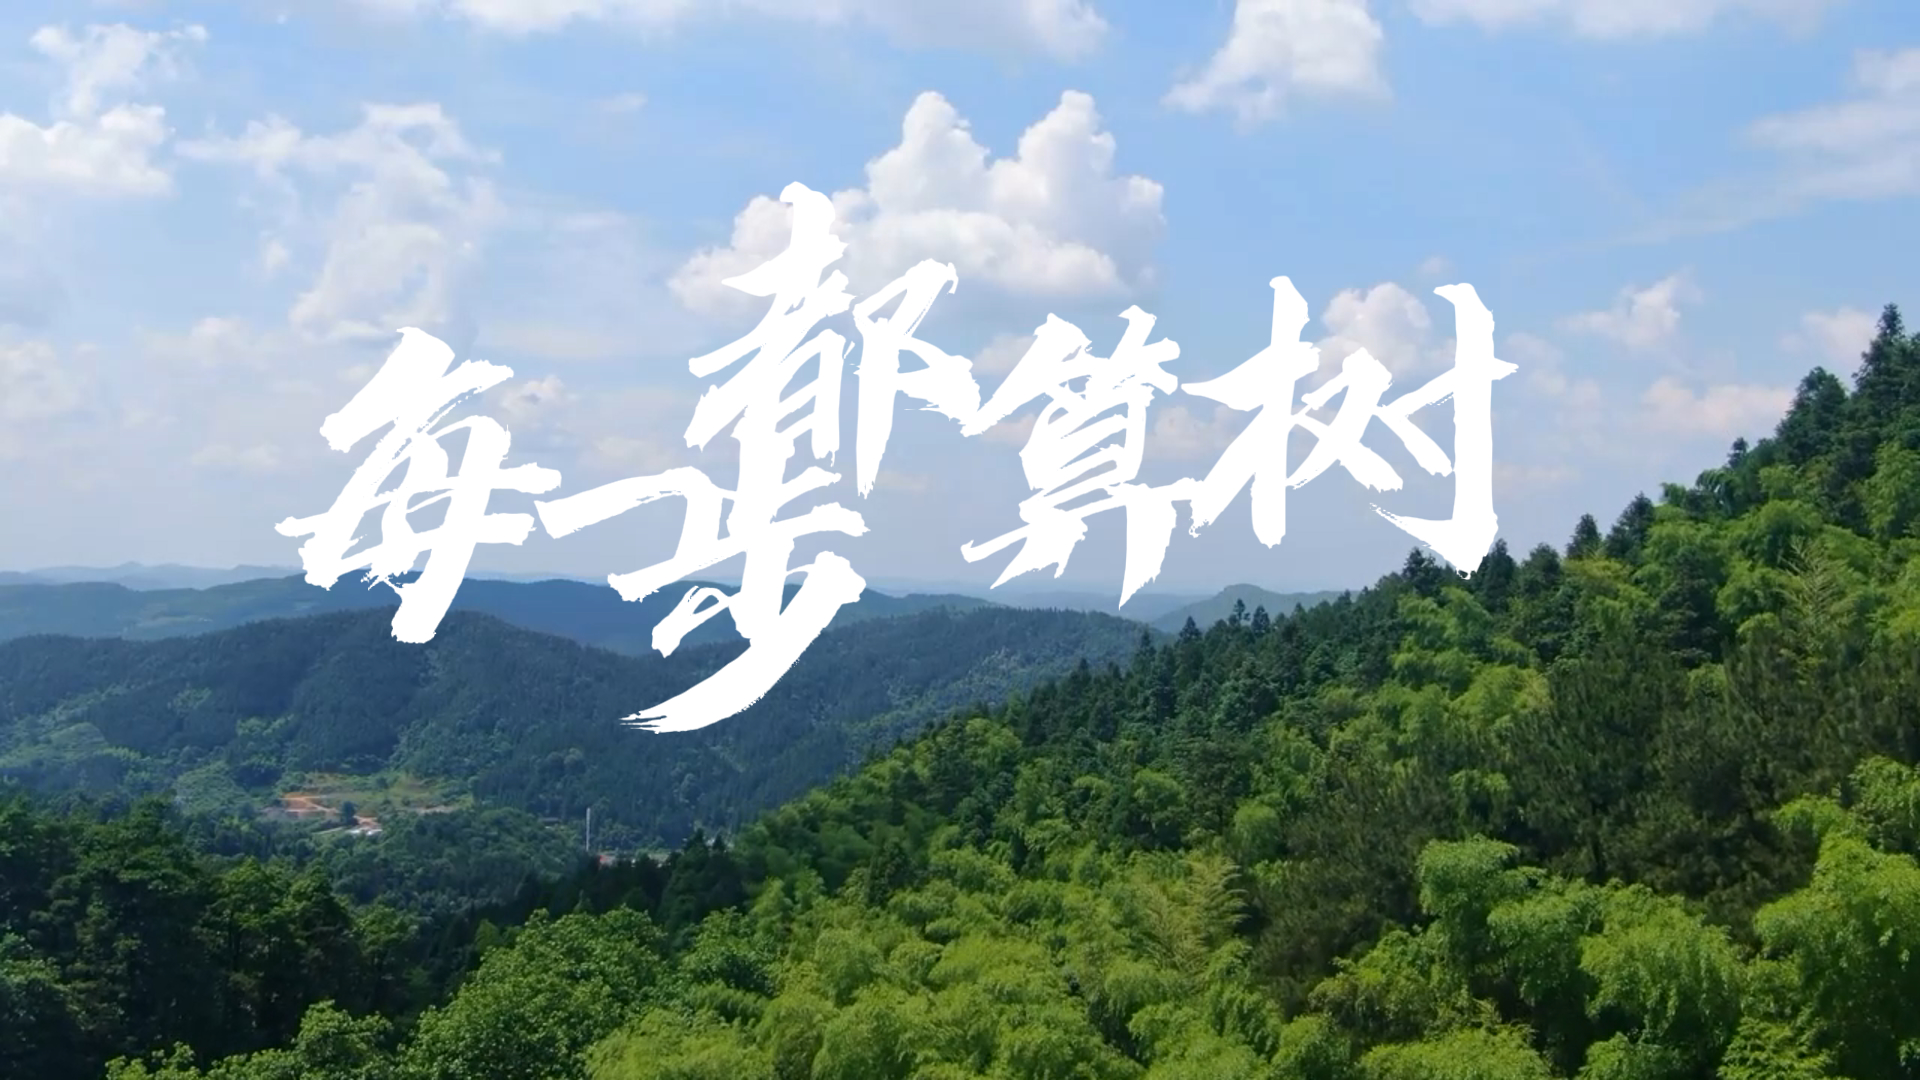 广东共青团原创绿美主题MV《每一步，都算树》正式发布